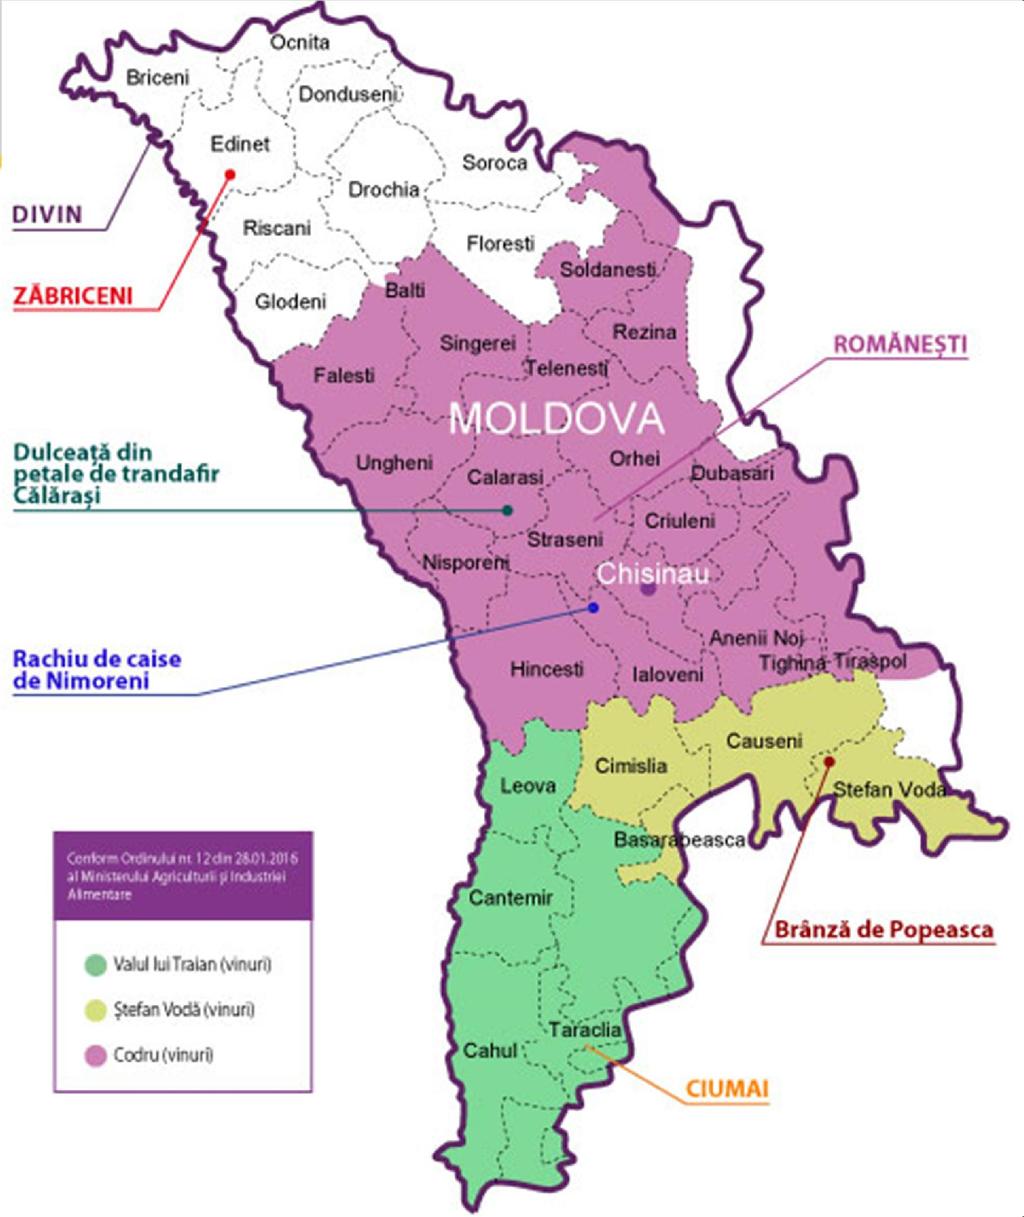 IG şi DO din RM În Republica Moldova sunt înregistrate: trei DO: Ciumai, Romaneşti, BRÎNZĂ DE POPEASCA, șapte IG: Divin,